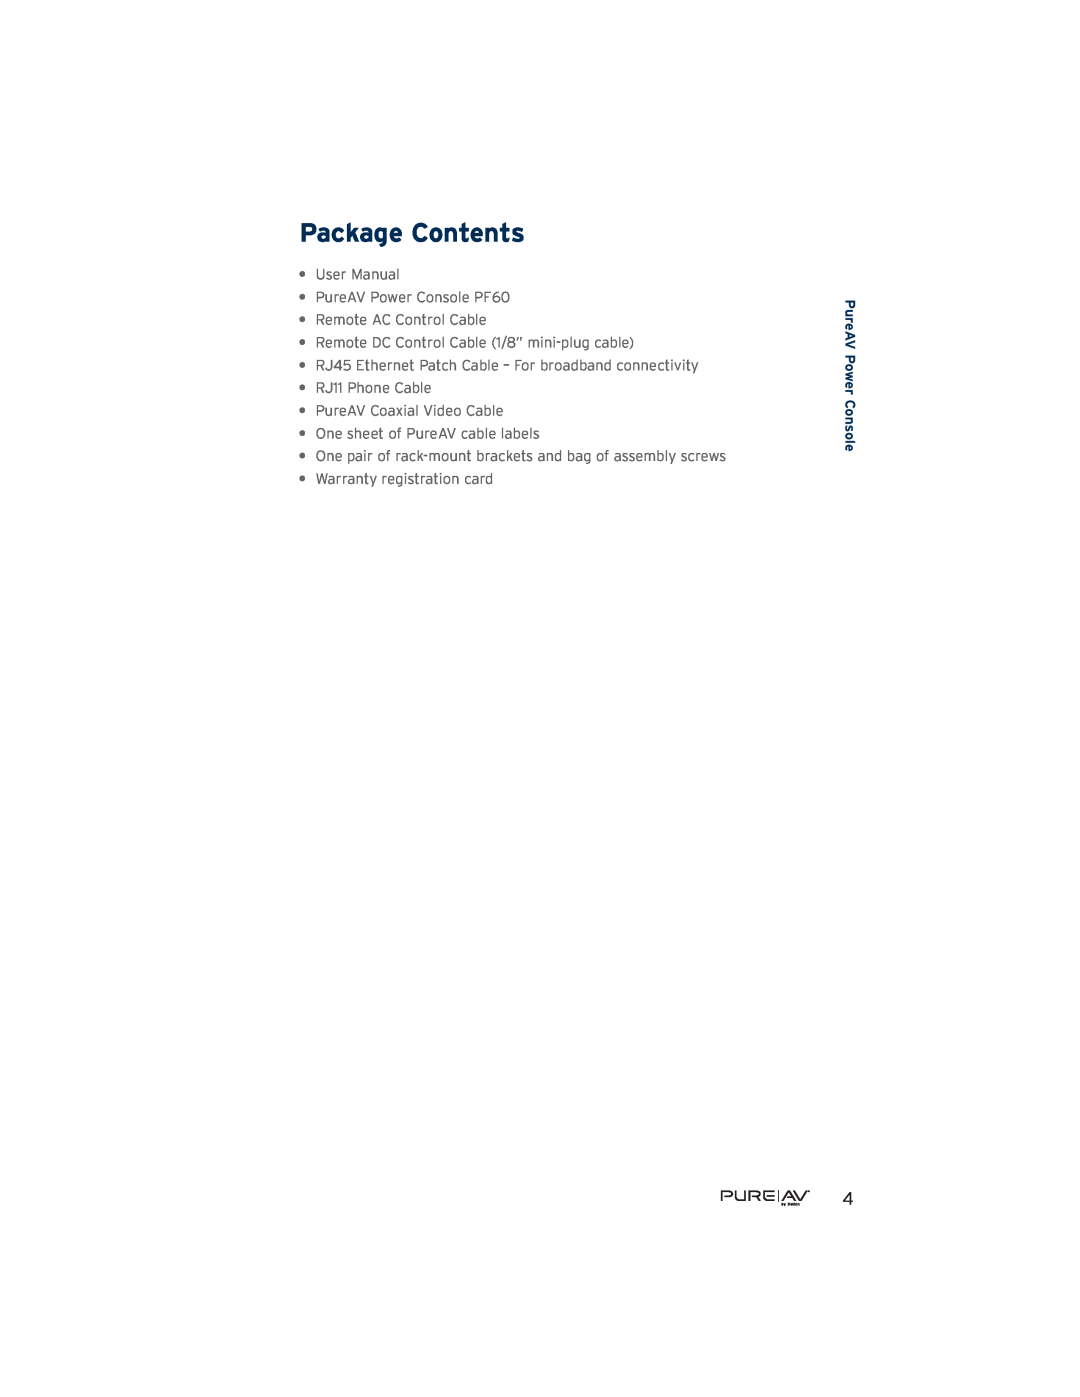 Belkin AP41300-12, PF60 user manual Package Contents, •Remote AC Control Cable, •Remote DC Control Cable 1/8” mini-plugcable 